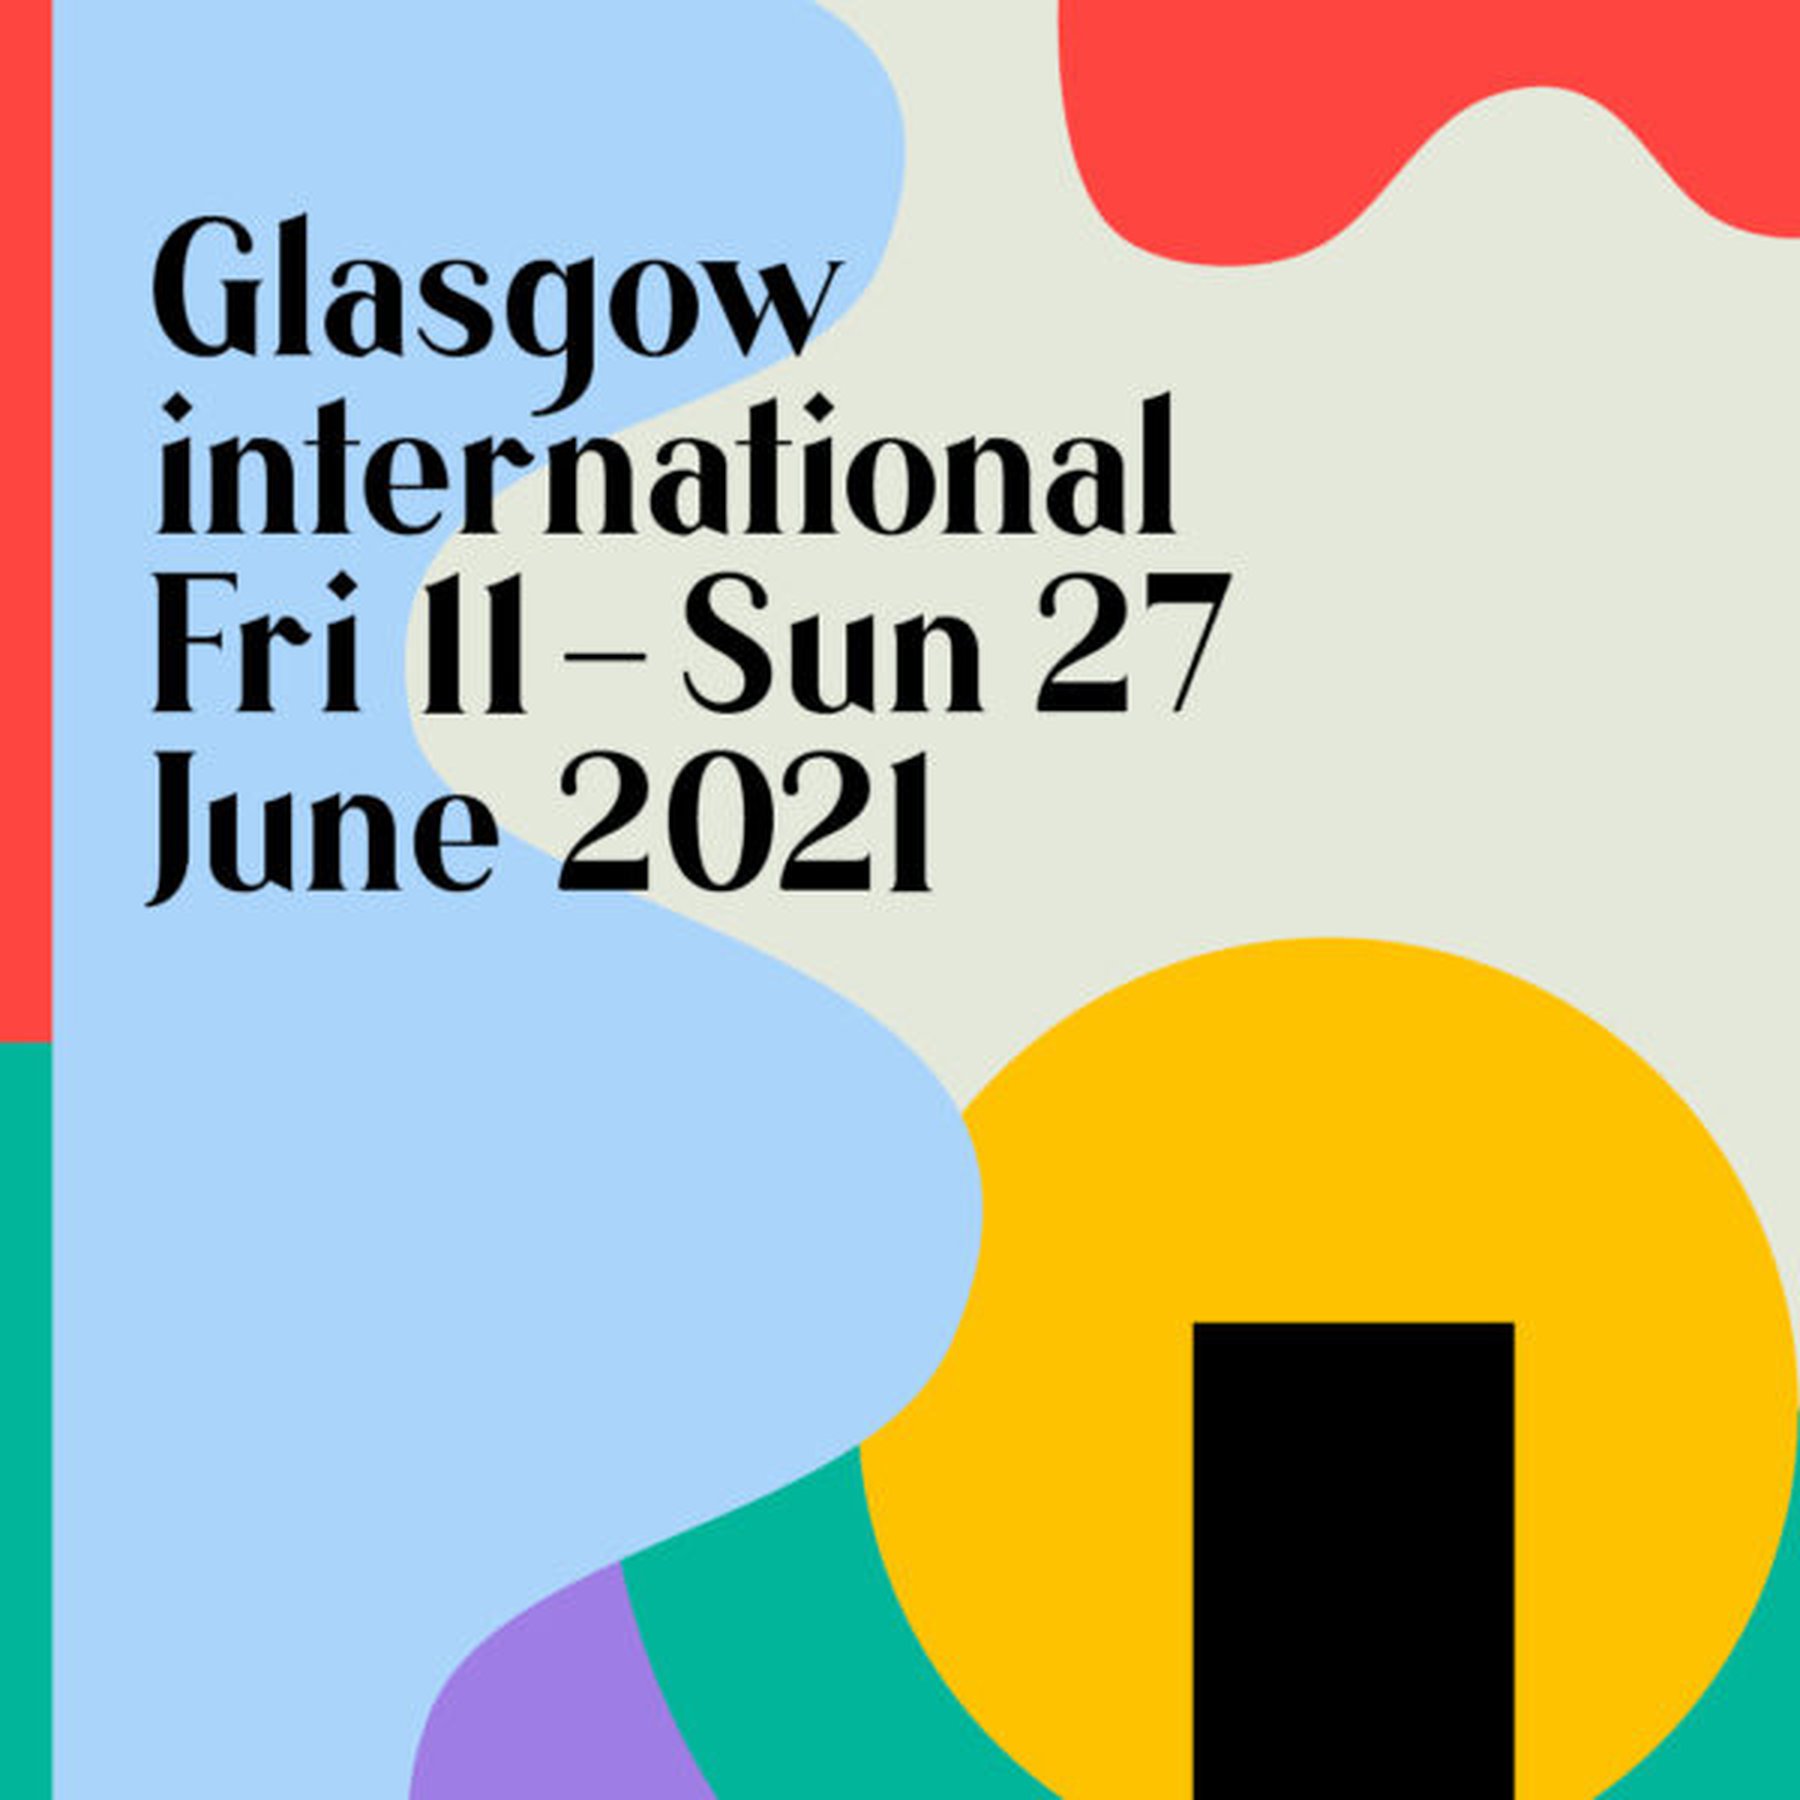 Glasgow international